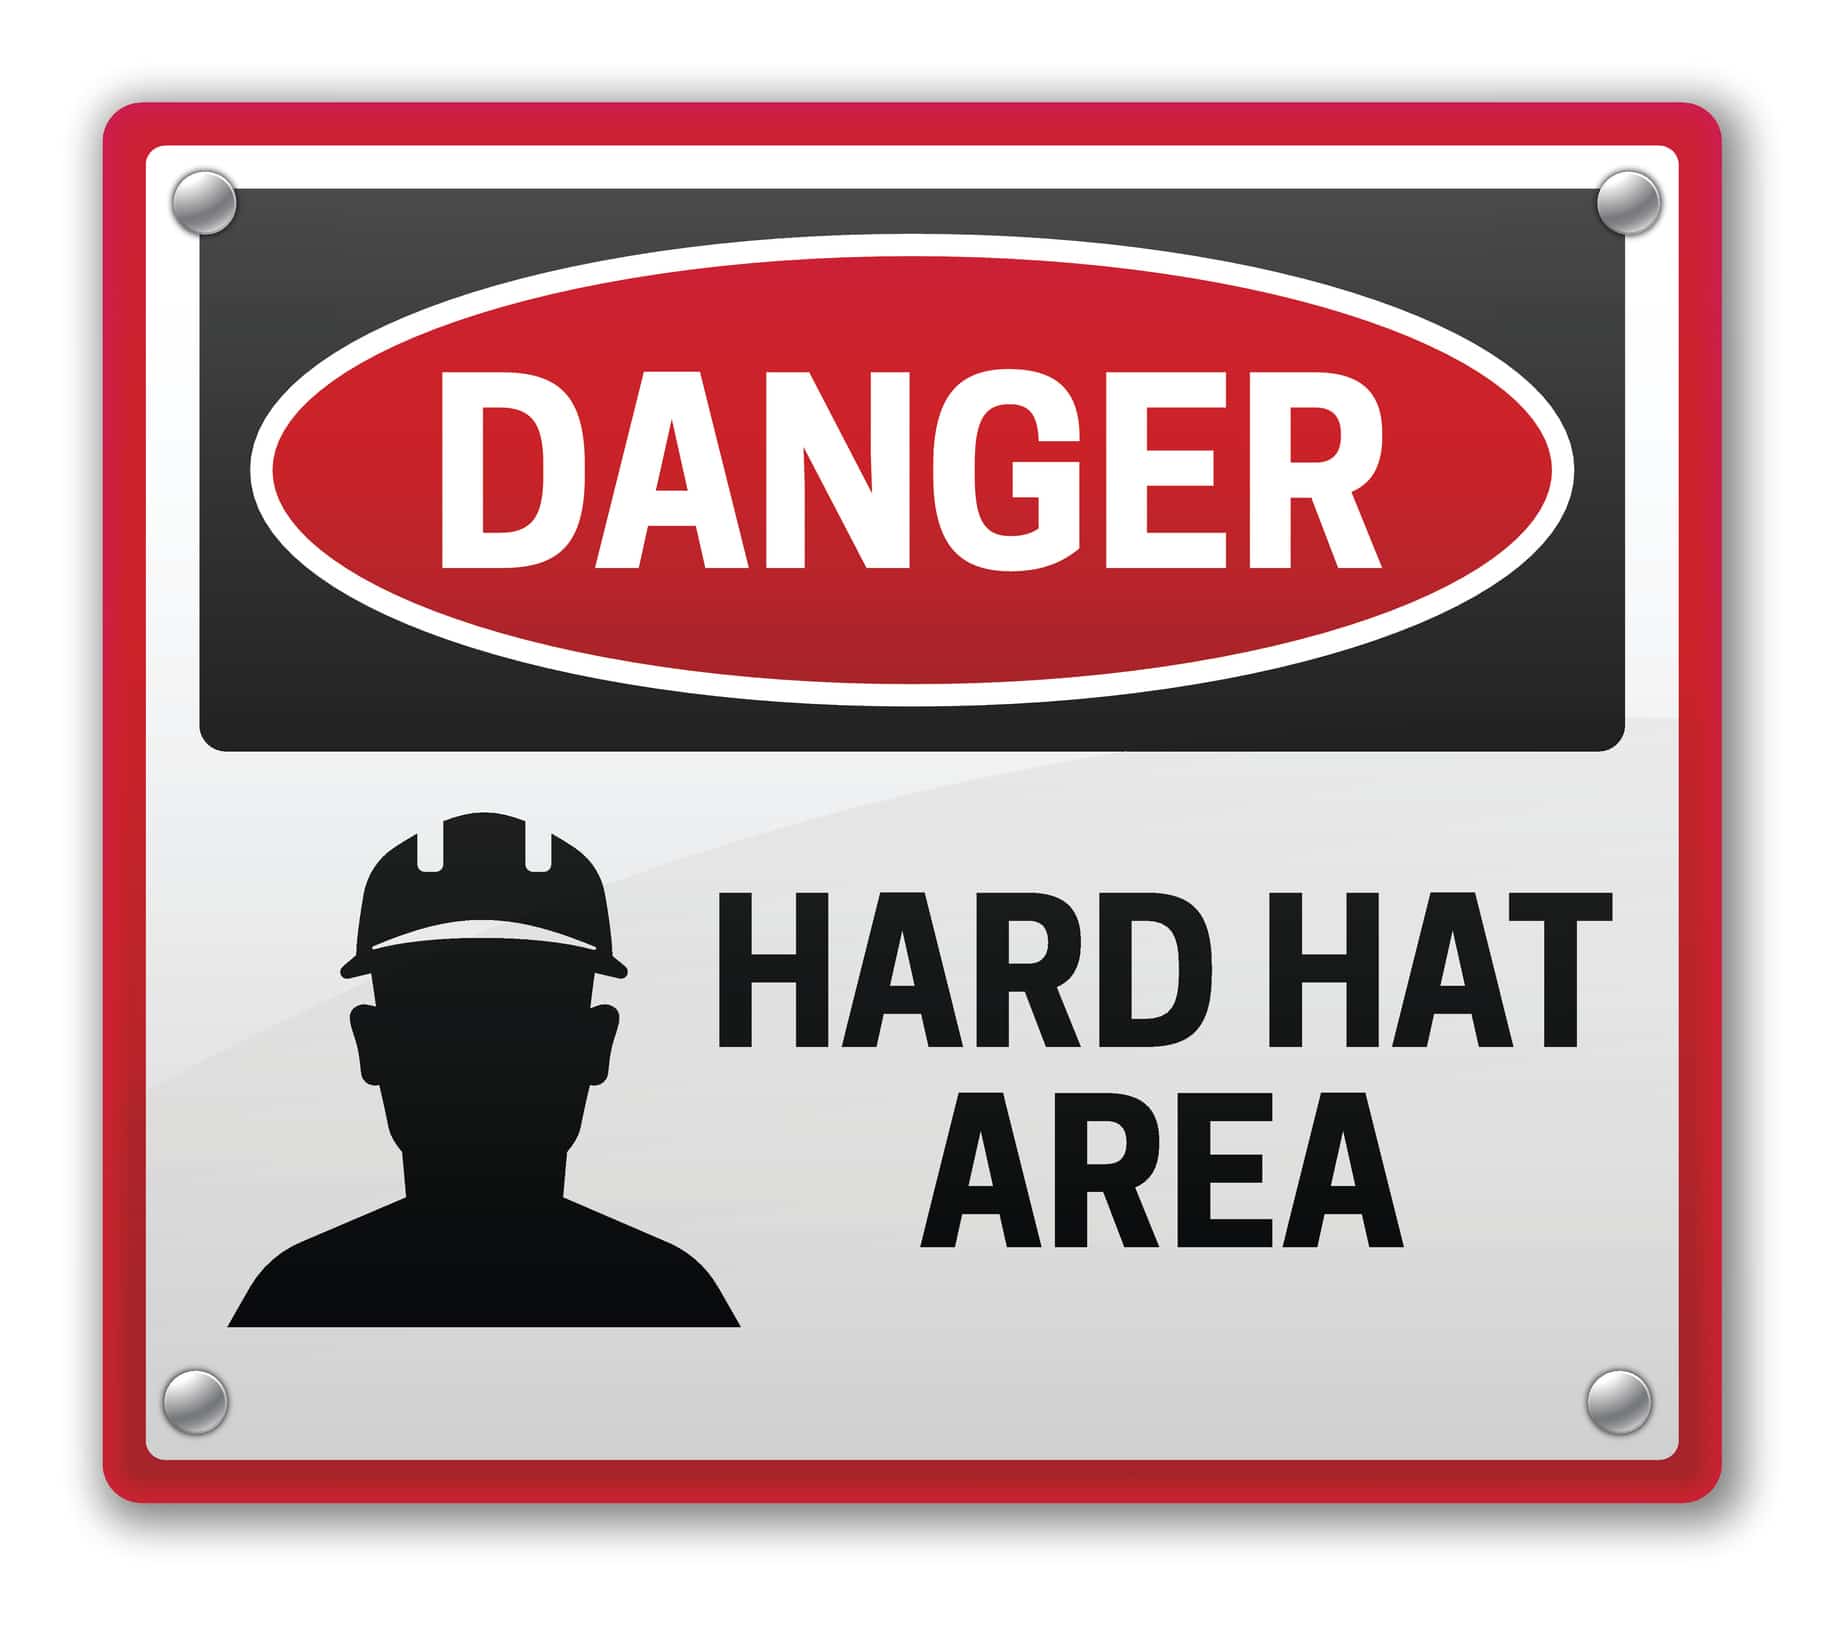 Danger hard hat area construction warning sign